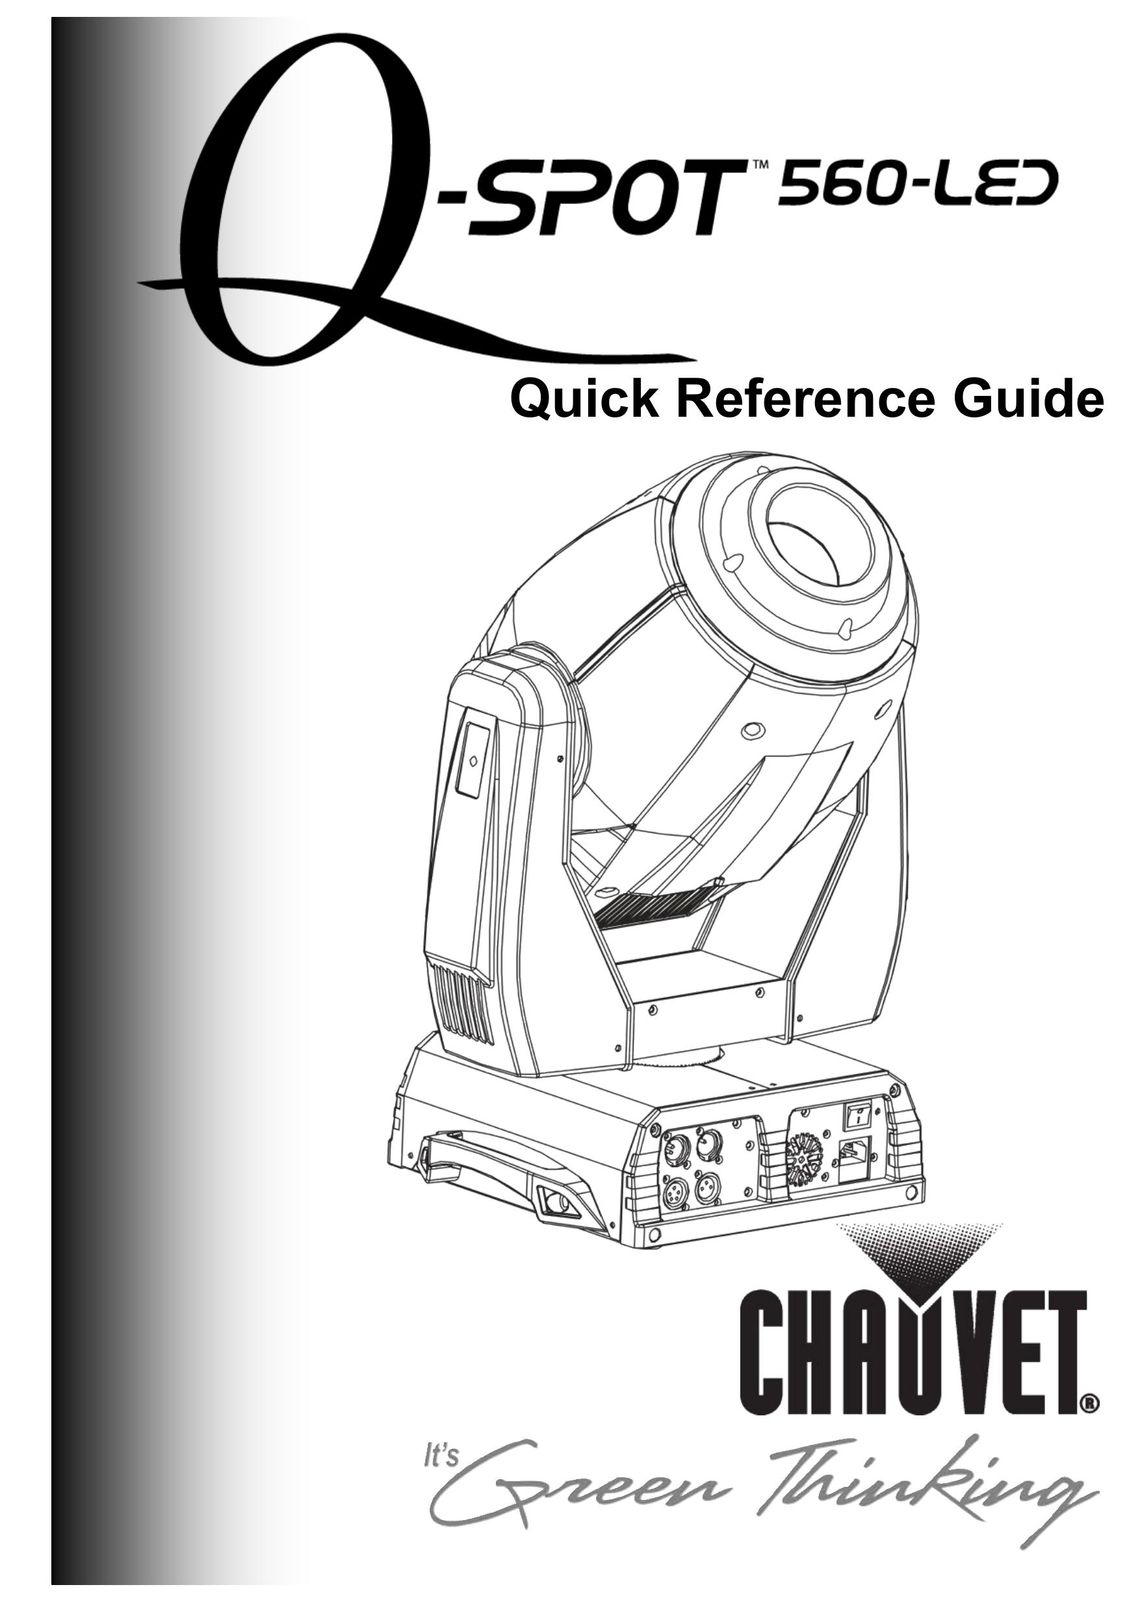 Chauvet 560-LED Work Light User Manual